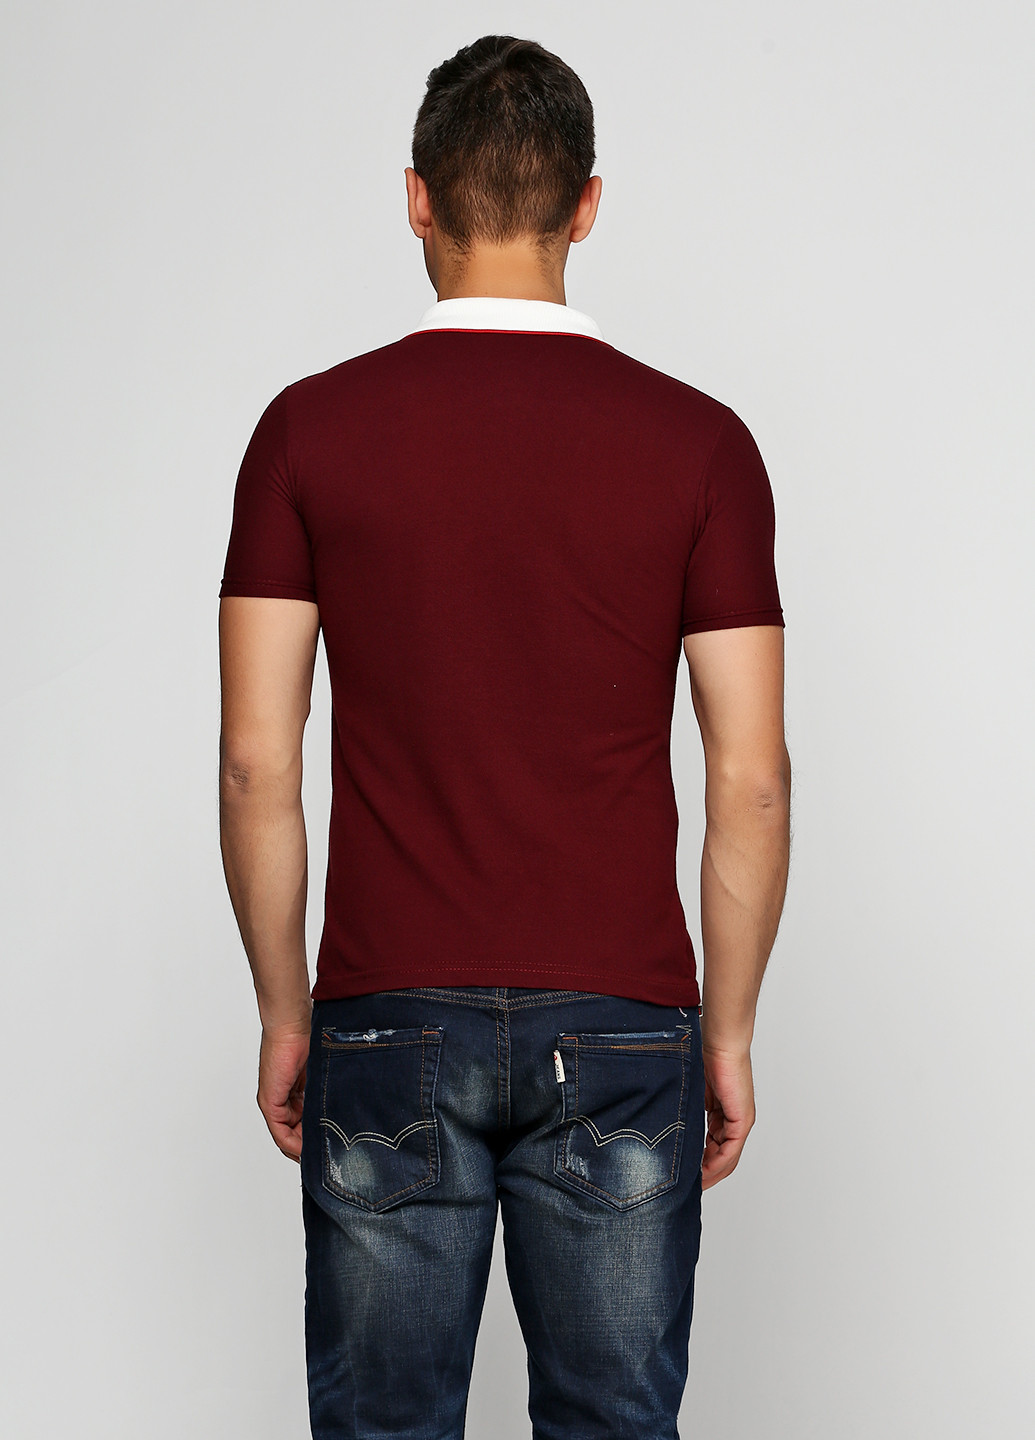 Бордовая футболка-поло для мужчин Chiarotex однотонная